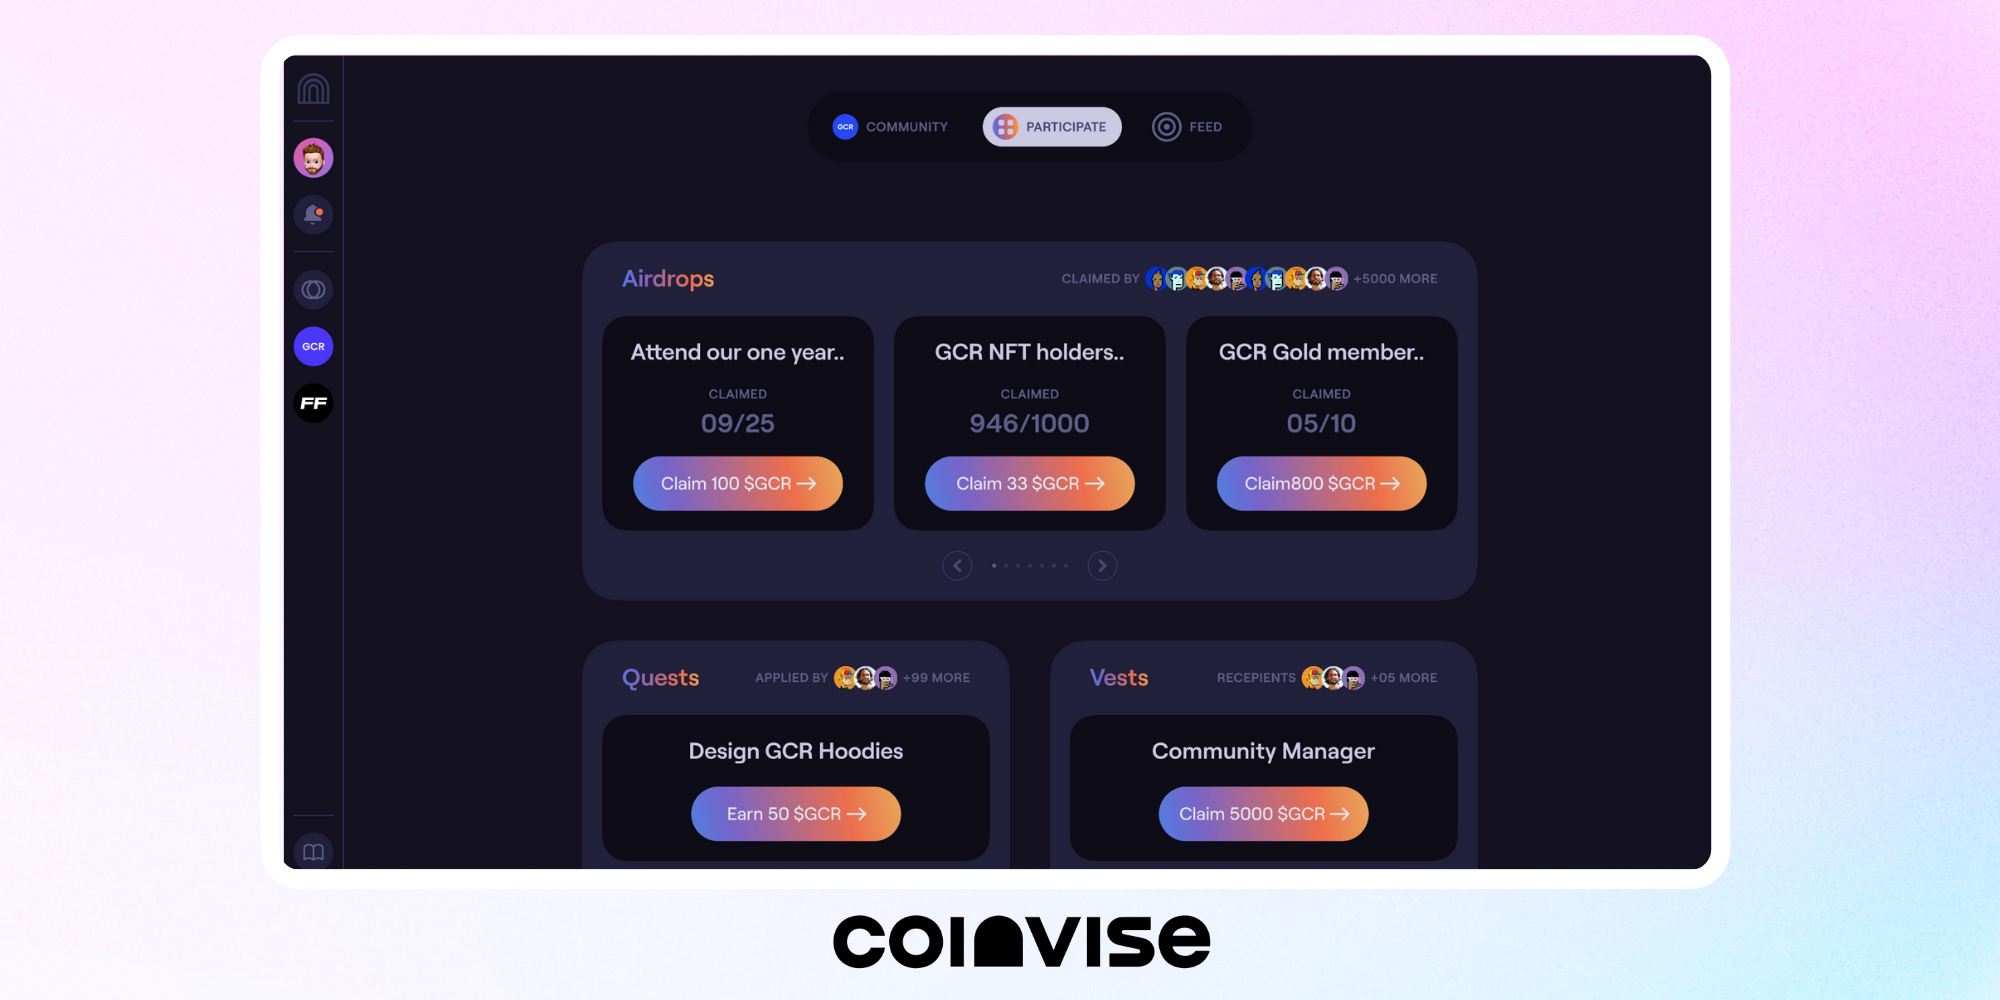 Coinvise's Profile - Participate Tab